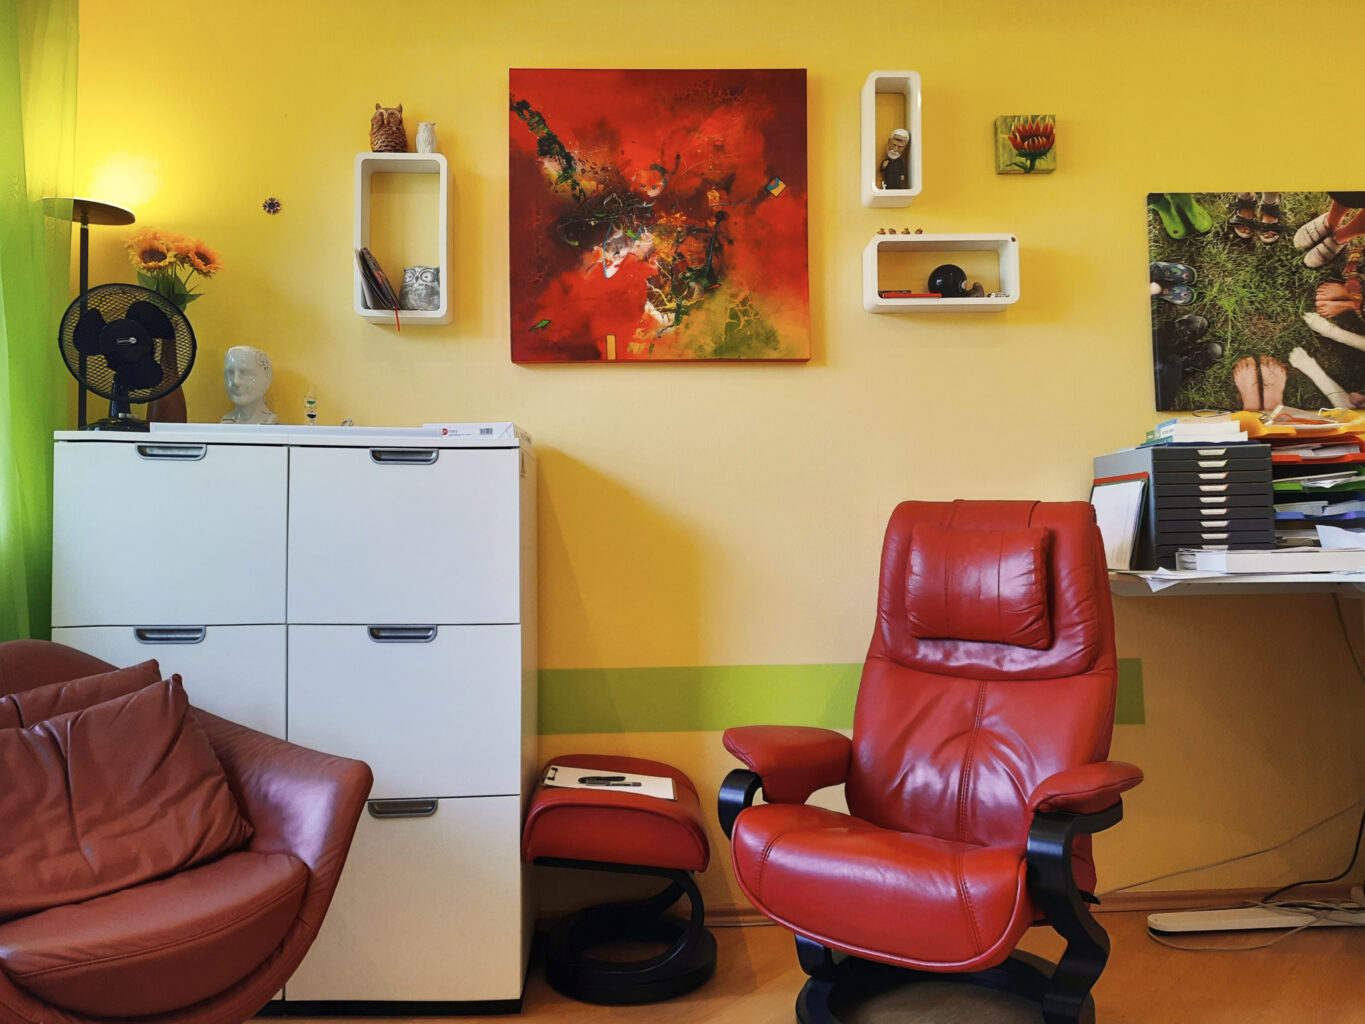 Innenaufnahme der Praxis. Die Tapete ist gelb. Ein großer roter Ledersessel steht im Raum. Links an der Wand steht ein weißer Schrank, davor steht ein rot-brauner Sessel. An der Wand hängen Bilder. Links ist ein hellgrüner Vorhang.